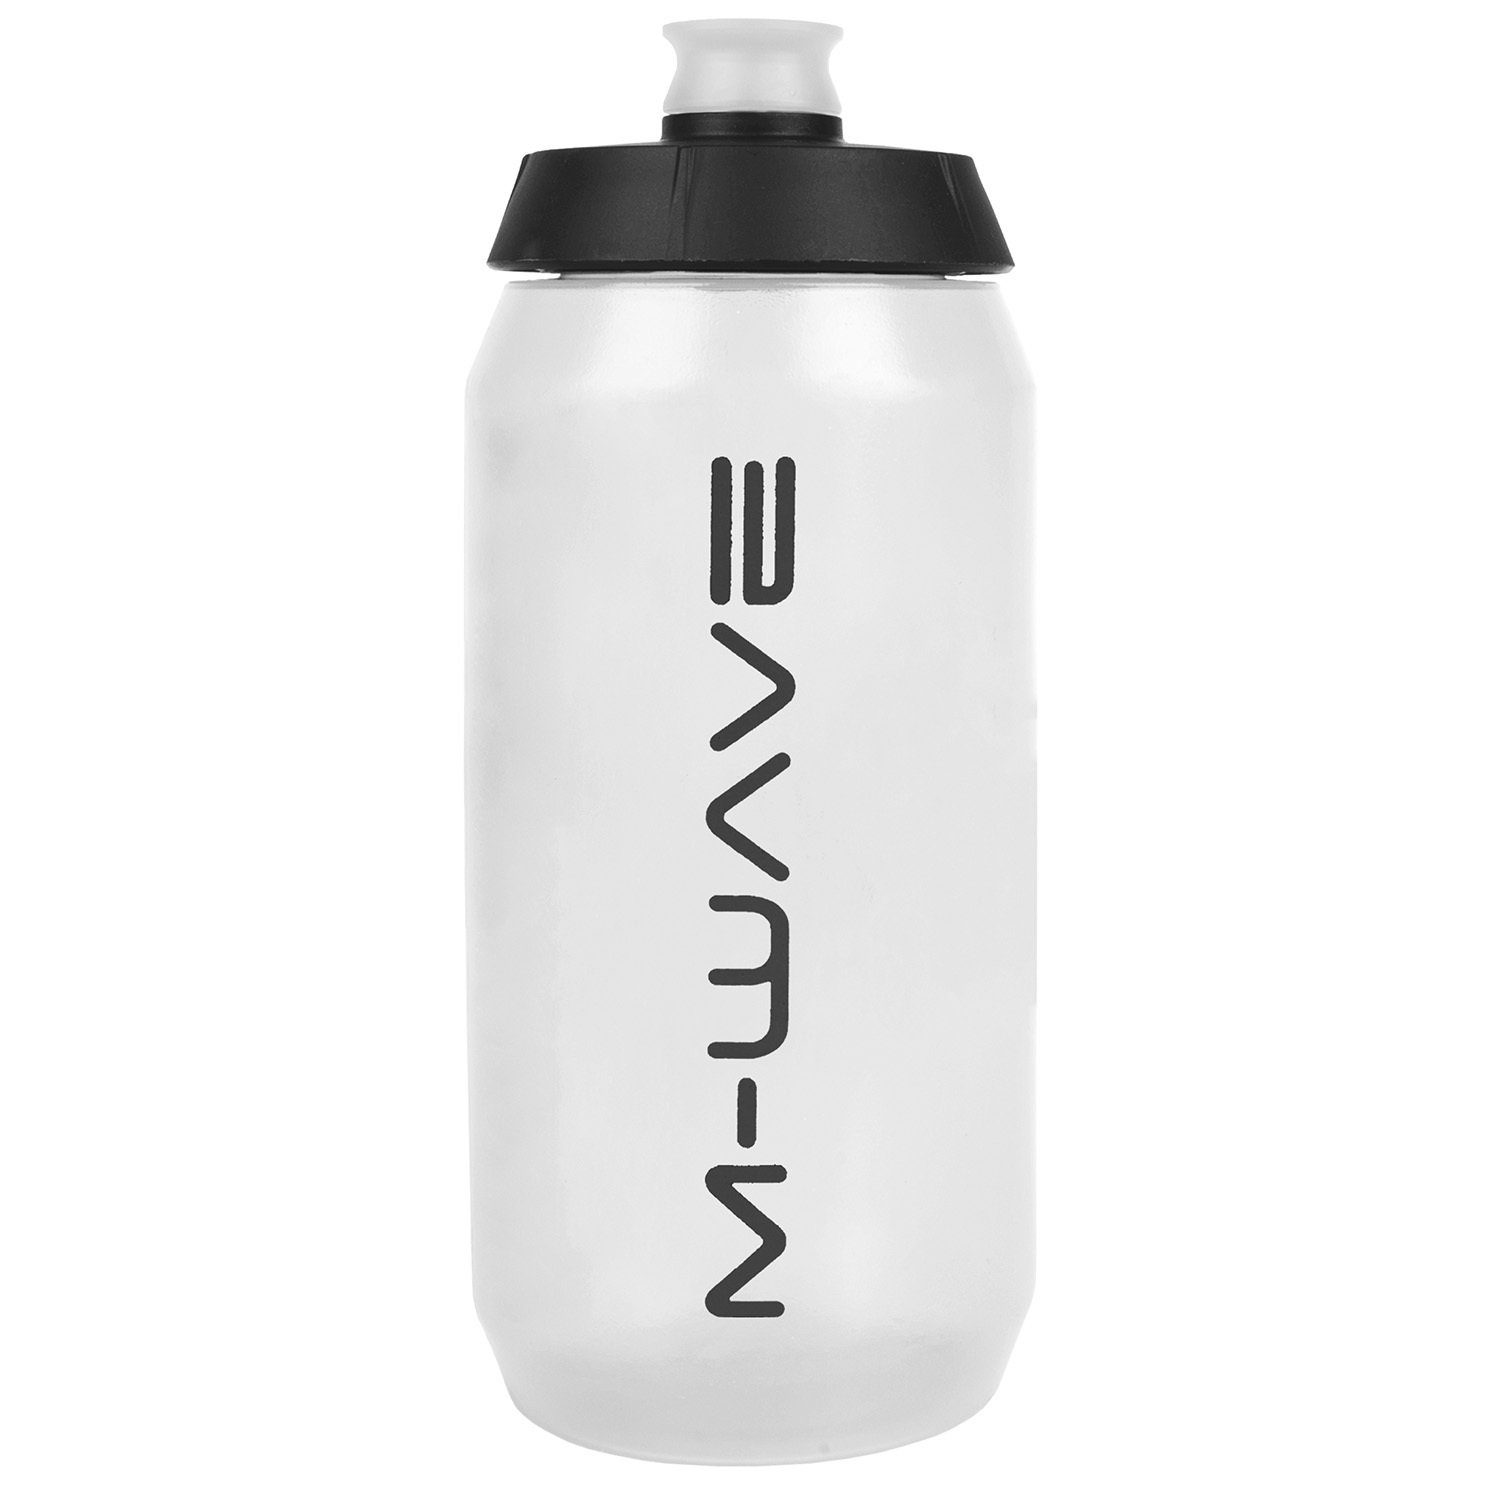 M-Wave Trinkflasche mit Weiß, Skala „PBO-550“, 550 ml, Kunststoff